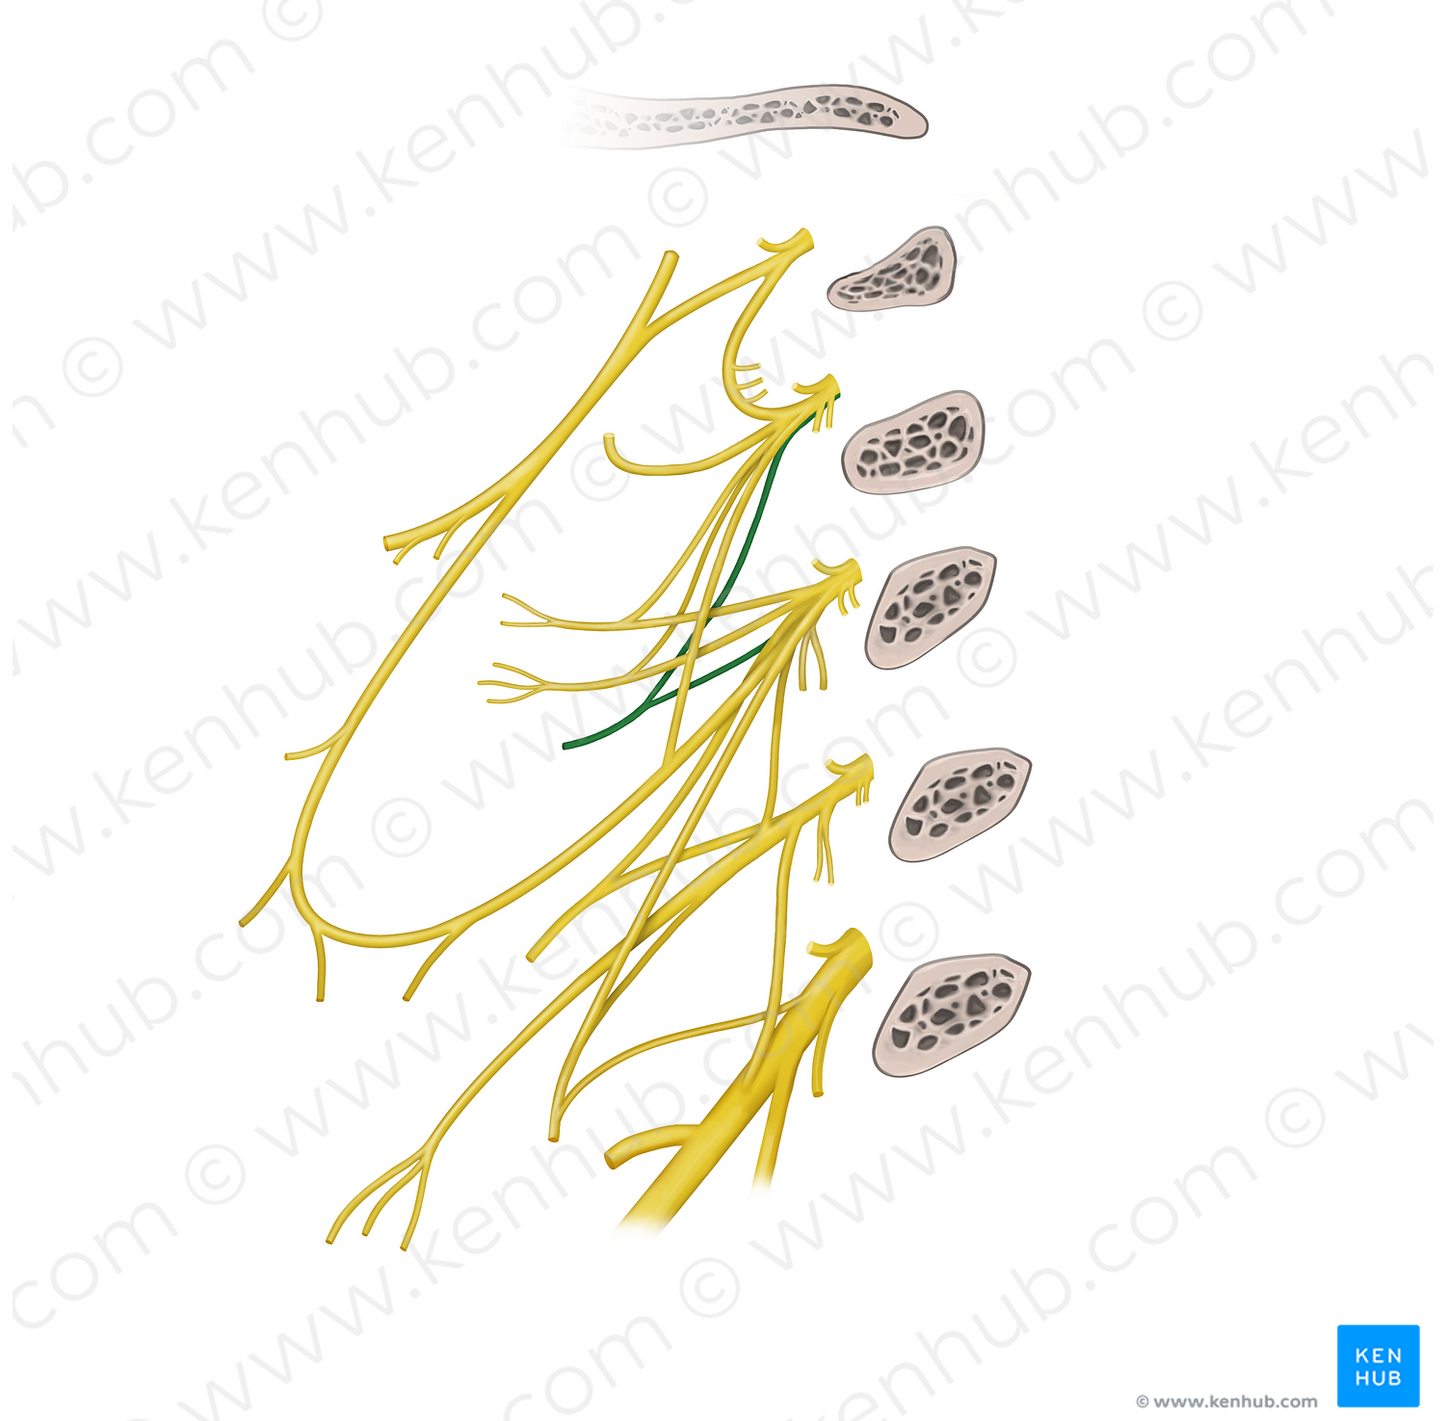 Sternocleidomastoid branch of cervical plexus (#20550)